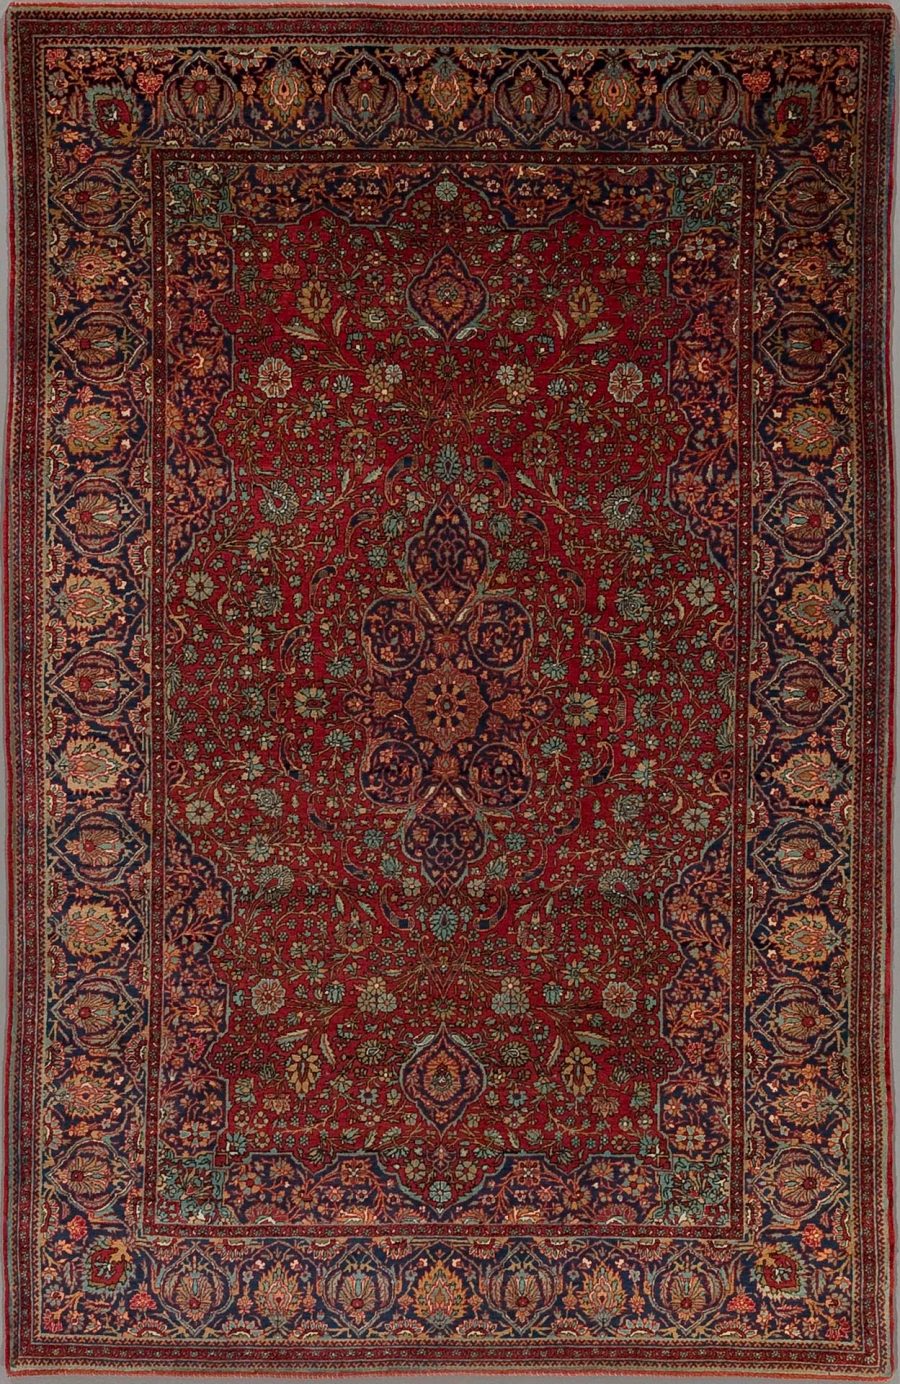 Detaillierter traditioneller persischer Teppich mit aufwendigem Muster in Rot-, Blau- und Beigetönen, zentralen Medaillons und Bordüren mit floralen und geometrischen Designs.